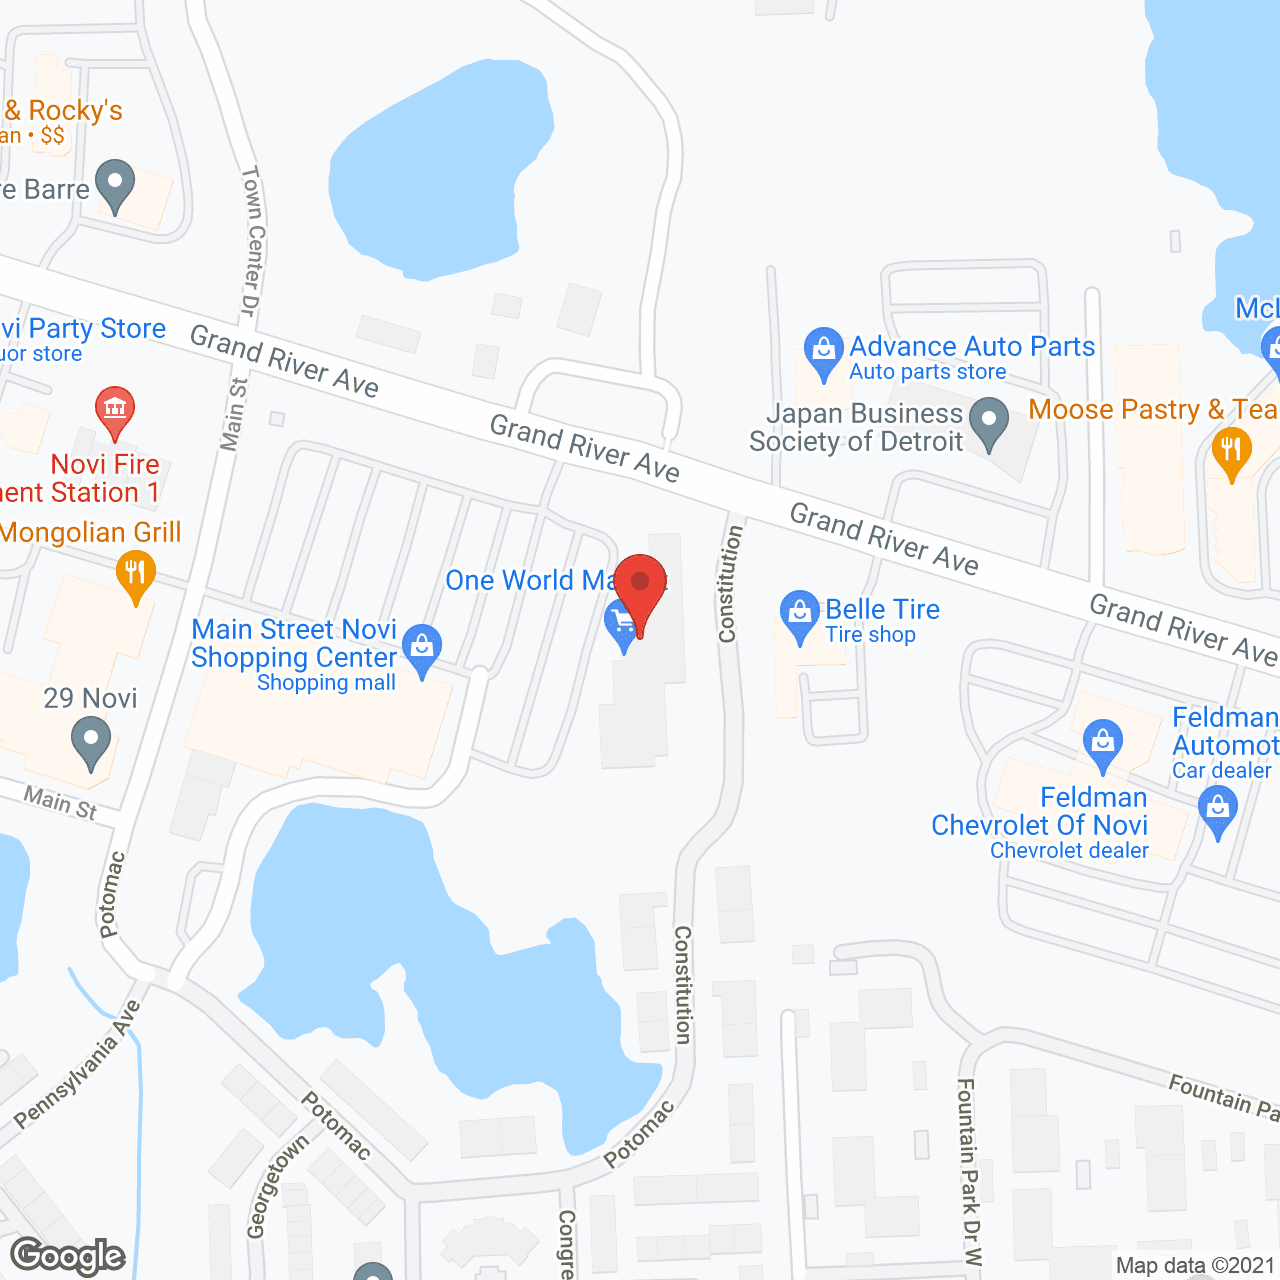 BrightStar Care of Novi in google map